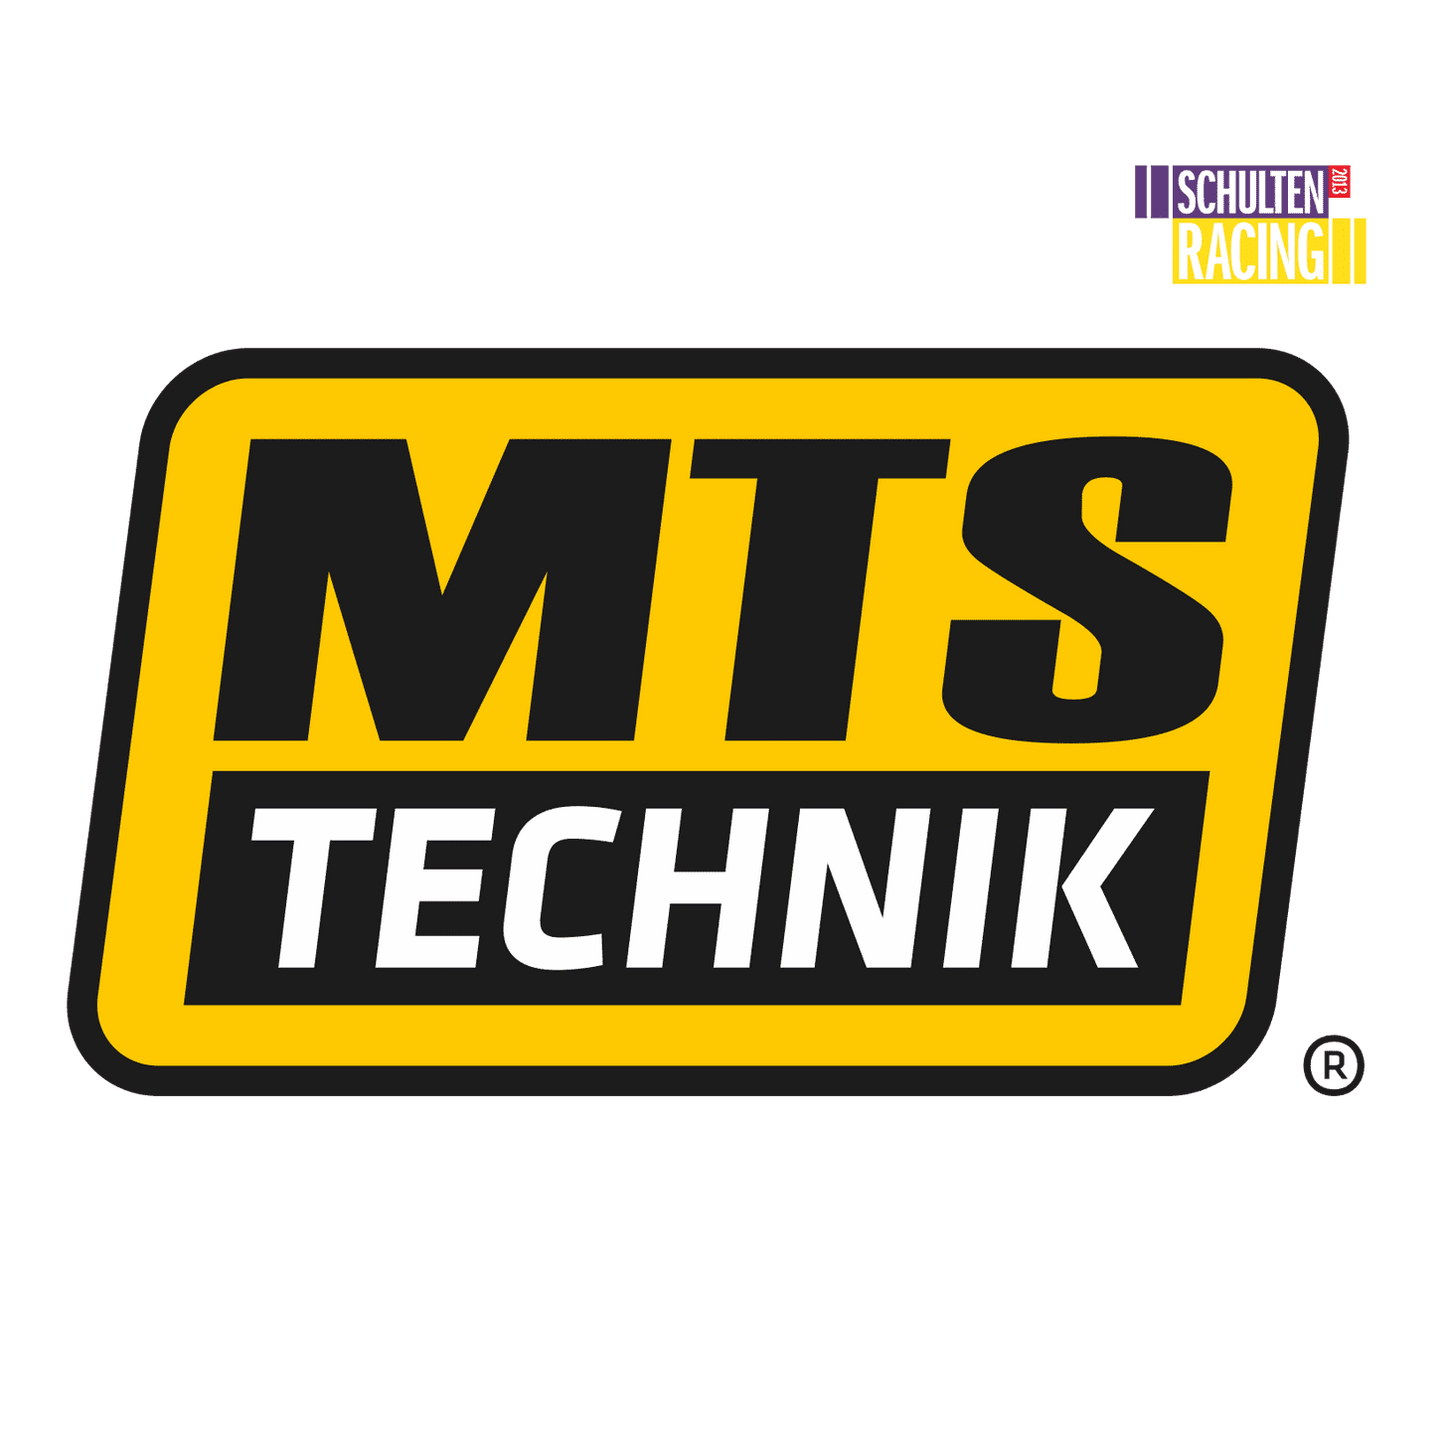 MTS TECHNIK Polyurethaan Top Mounts (achter) - Premium Voertuigonderdelen en -accessoires Van MTS TECHNIK - Voor €119.00! Shop nu bij Schulten Racing Parts